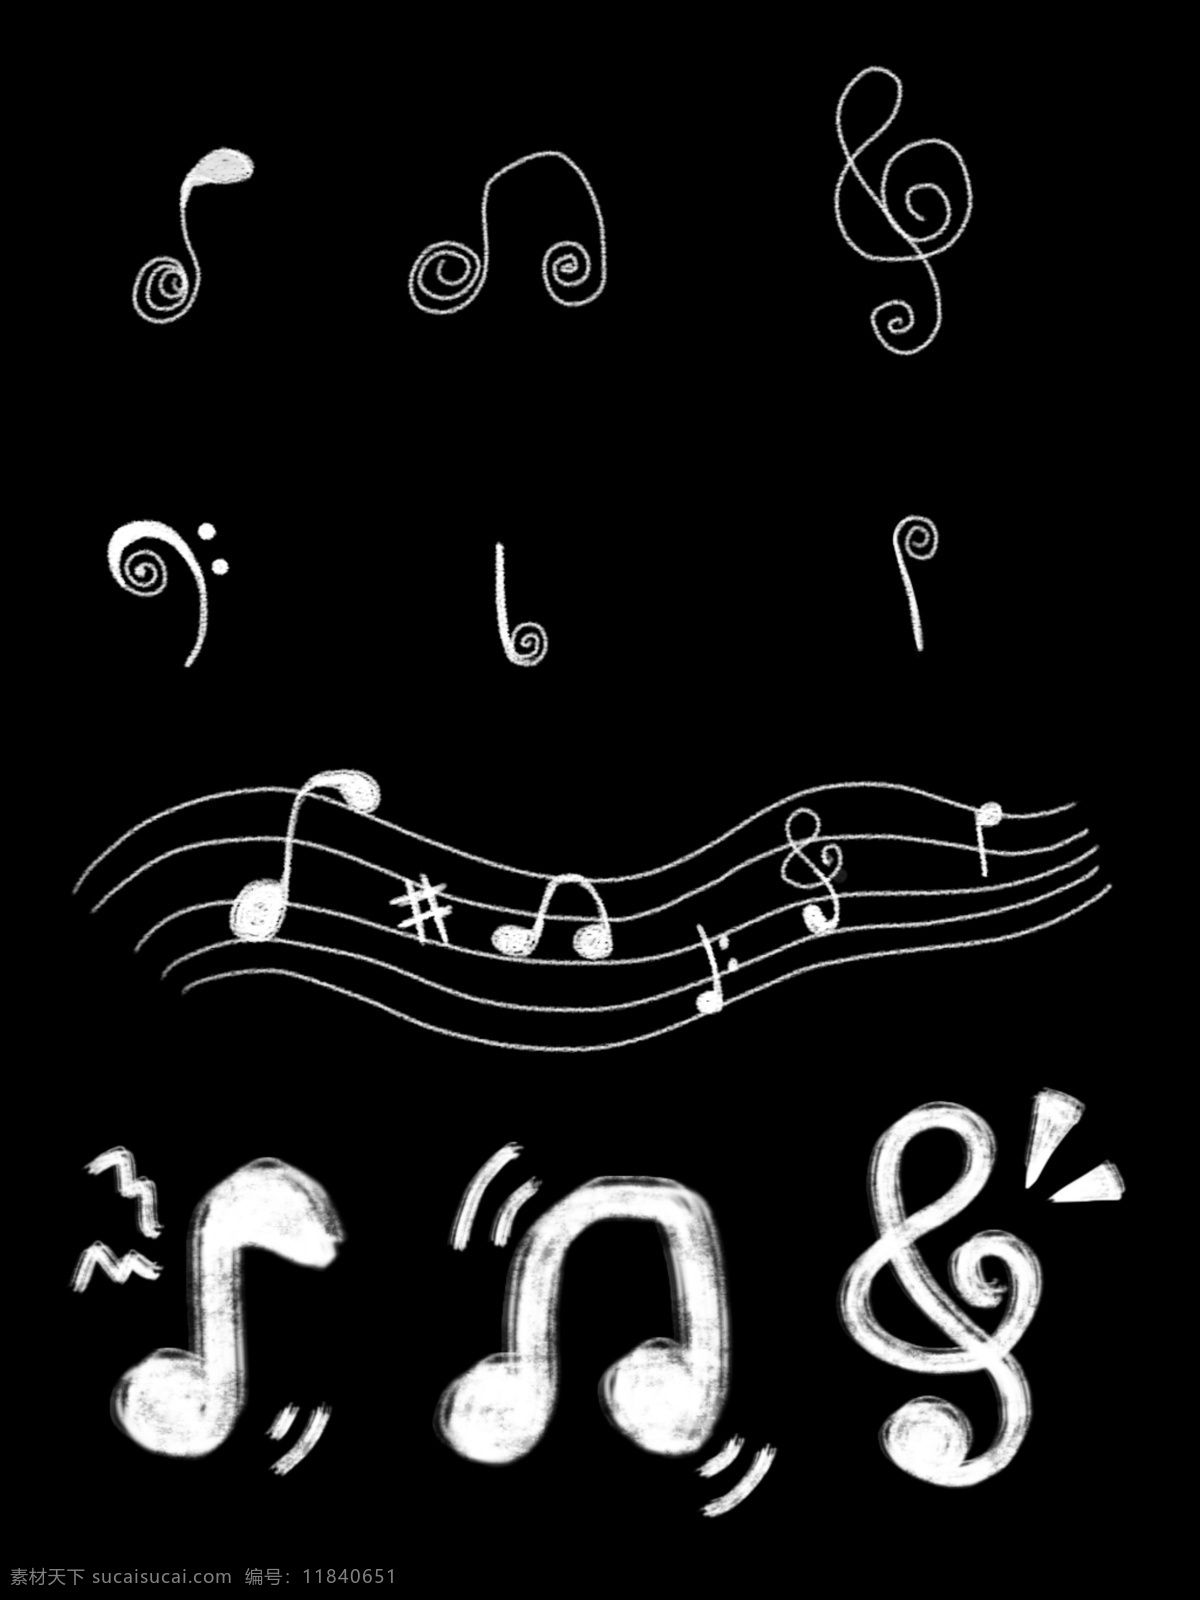 音乐节 音符 粉笔 黑板 画 元素 乐符 粉笔画 五线谱 音符粉笔画 黑板画 音符黑板画 可爱音符 音符装饰